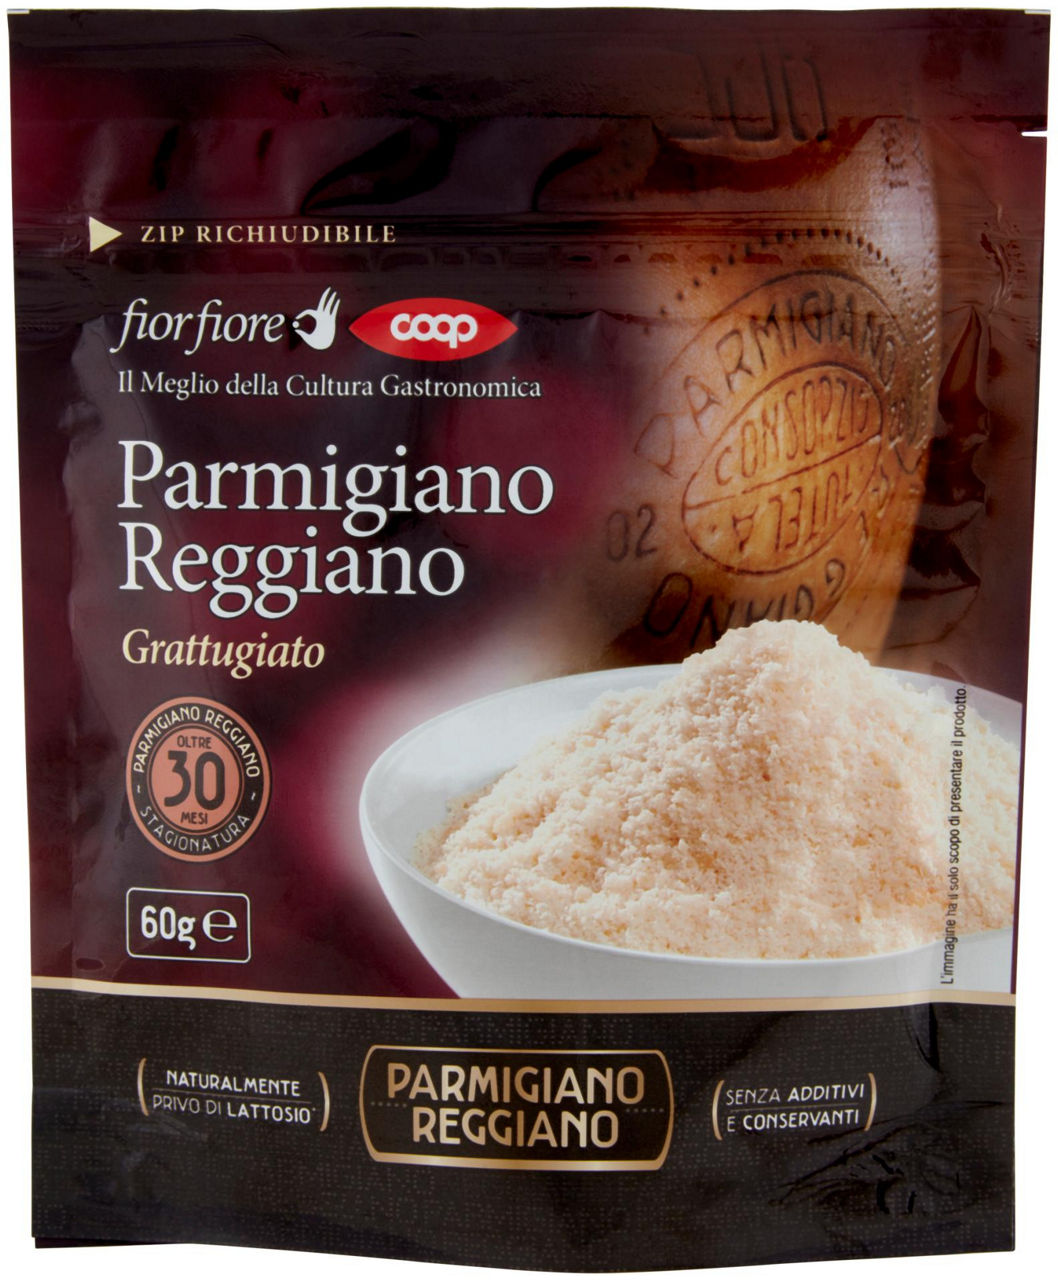 Parmigiano reggiano dop 30 mesi grattugiato fiorfiore coop g 60